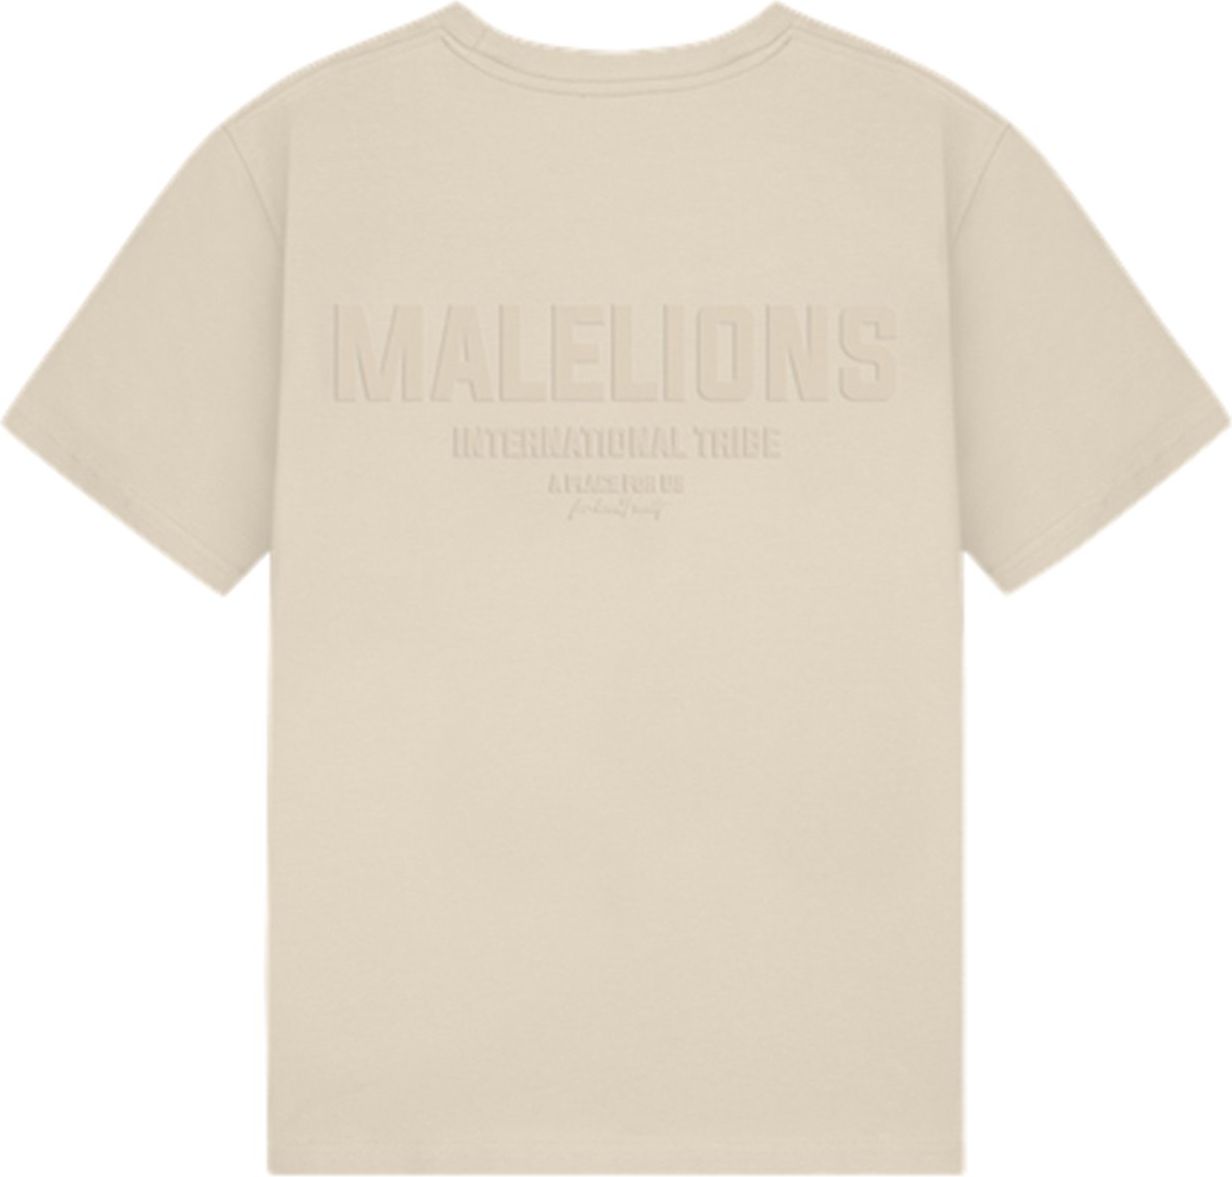 Malelions Tribe T-Shirt - Beige Beige